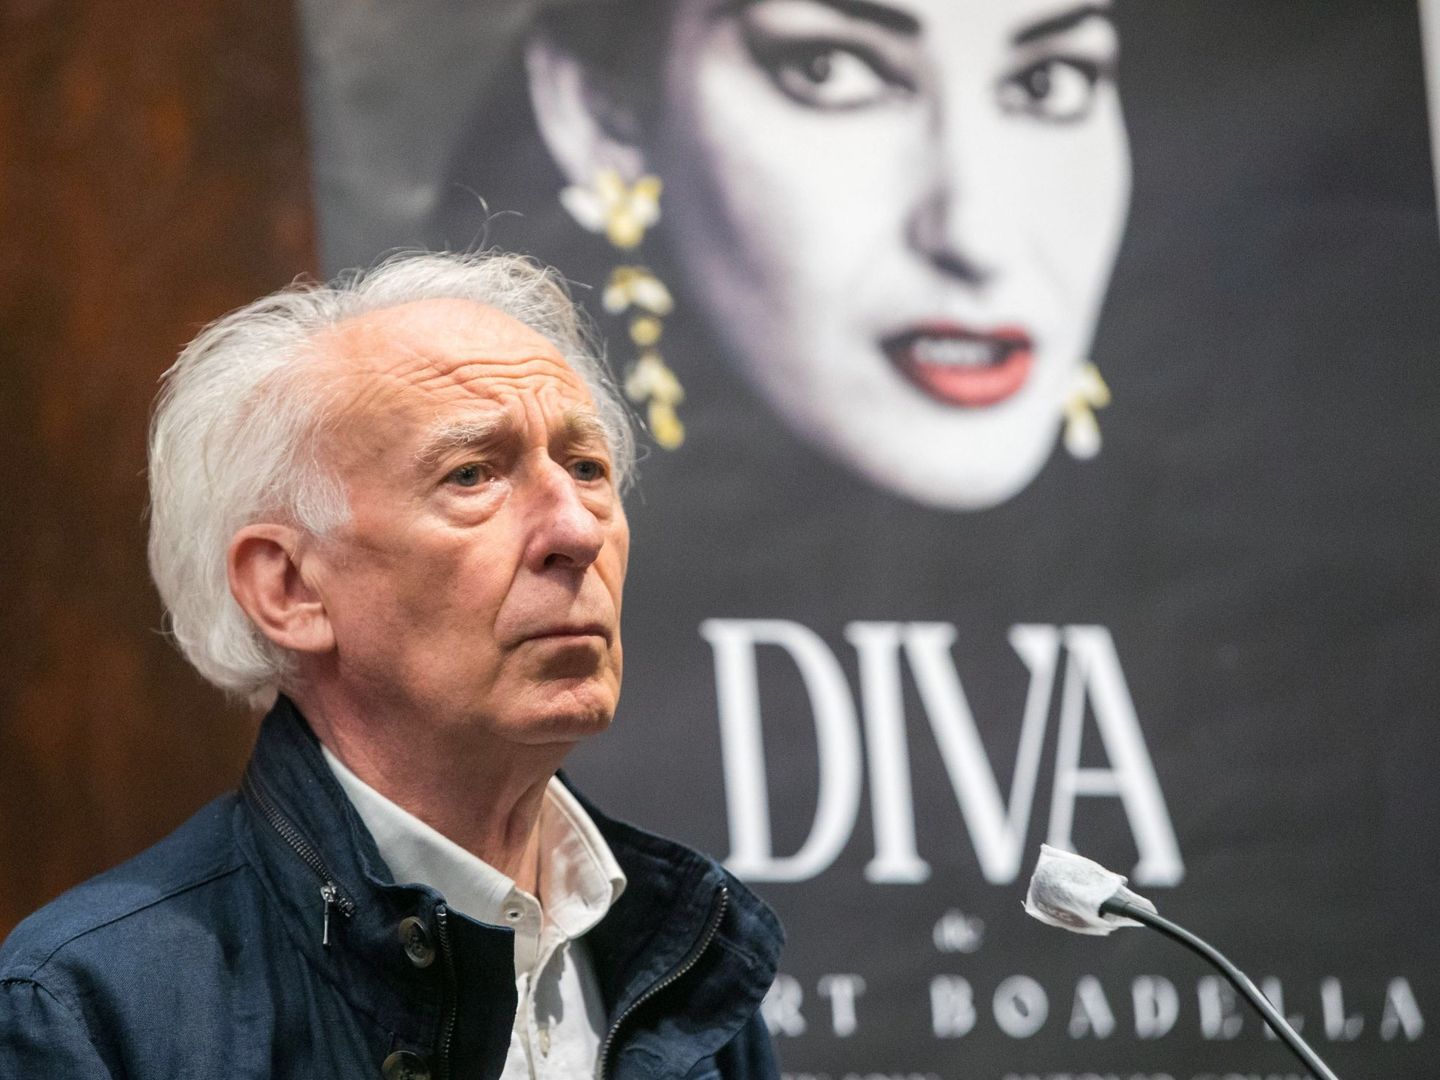 Albert Boadella, ante el cartel de su espectáculo 'Diva'. (EFE/Javier Cebollada)